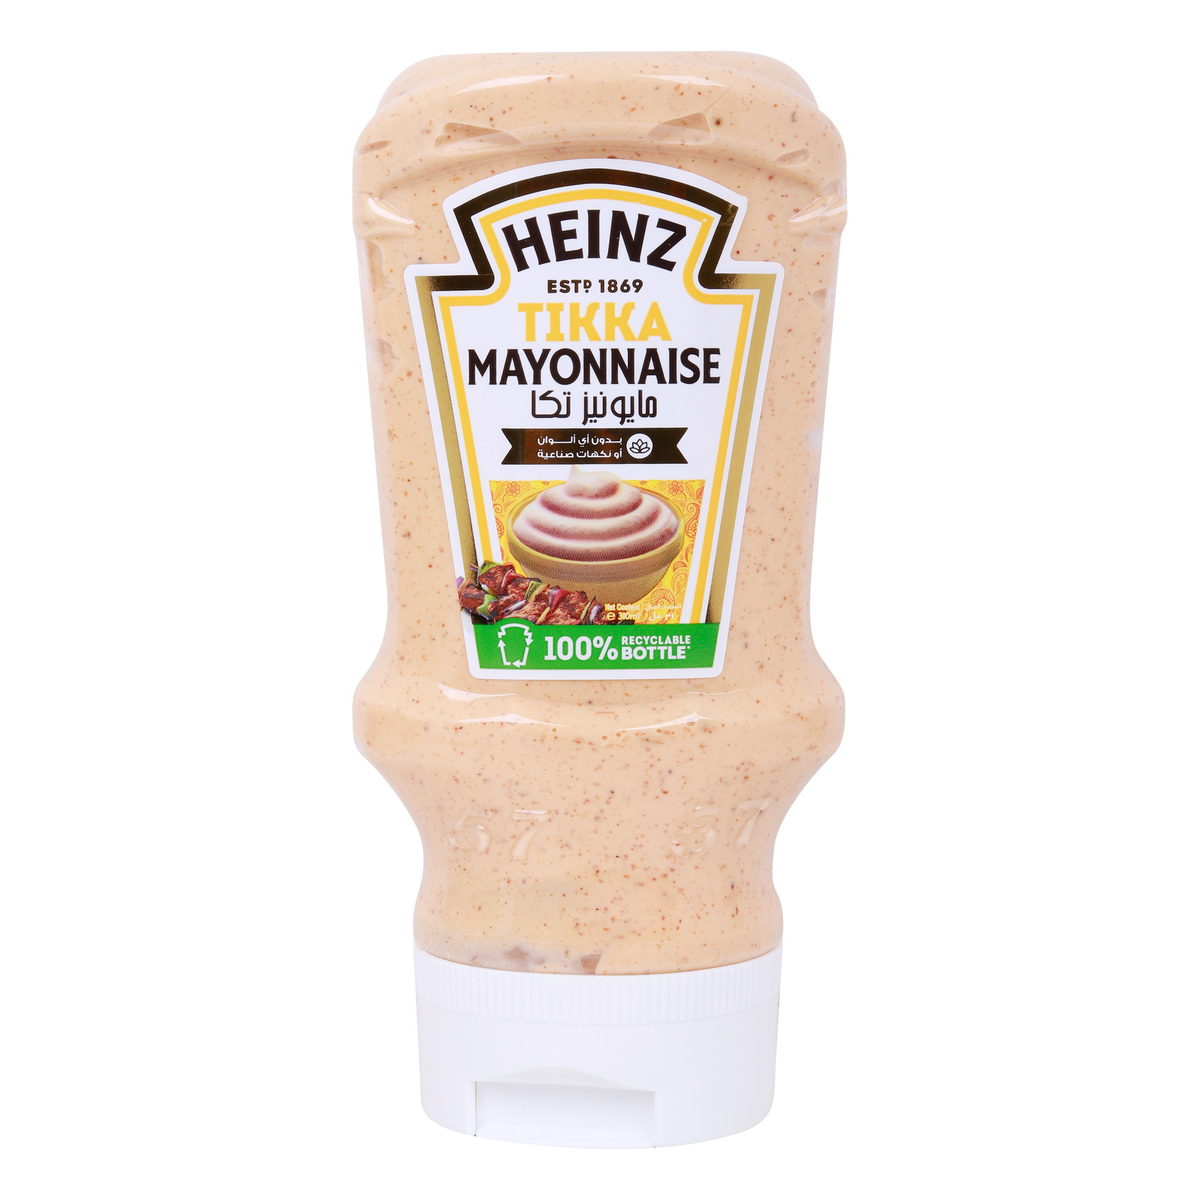 Buy Heinz Tikka Mayonnaise 310 ml Online at Best Price | Mayonnaise | Lulu UAE in UAE